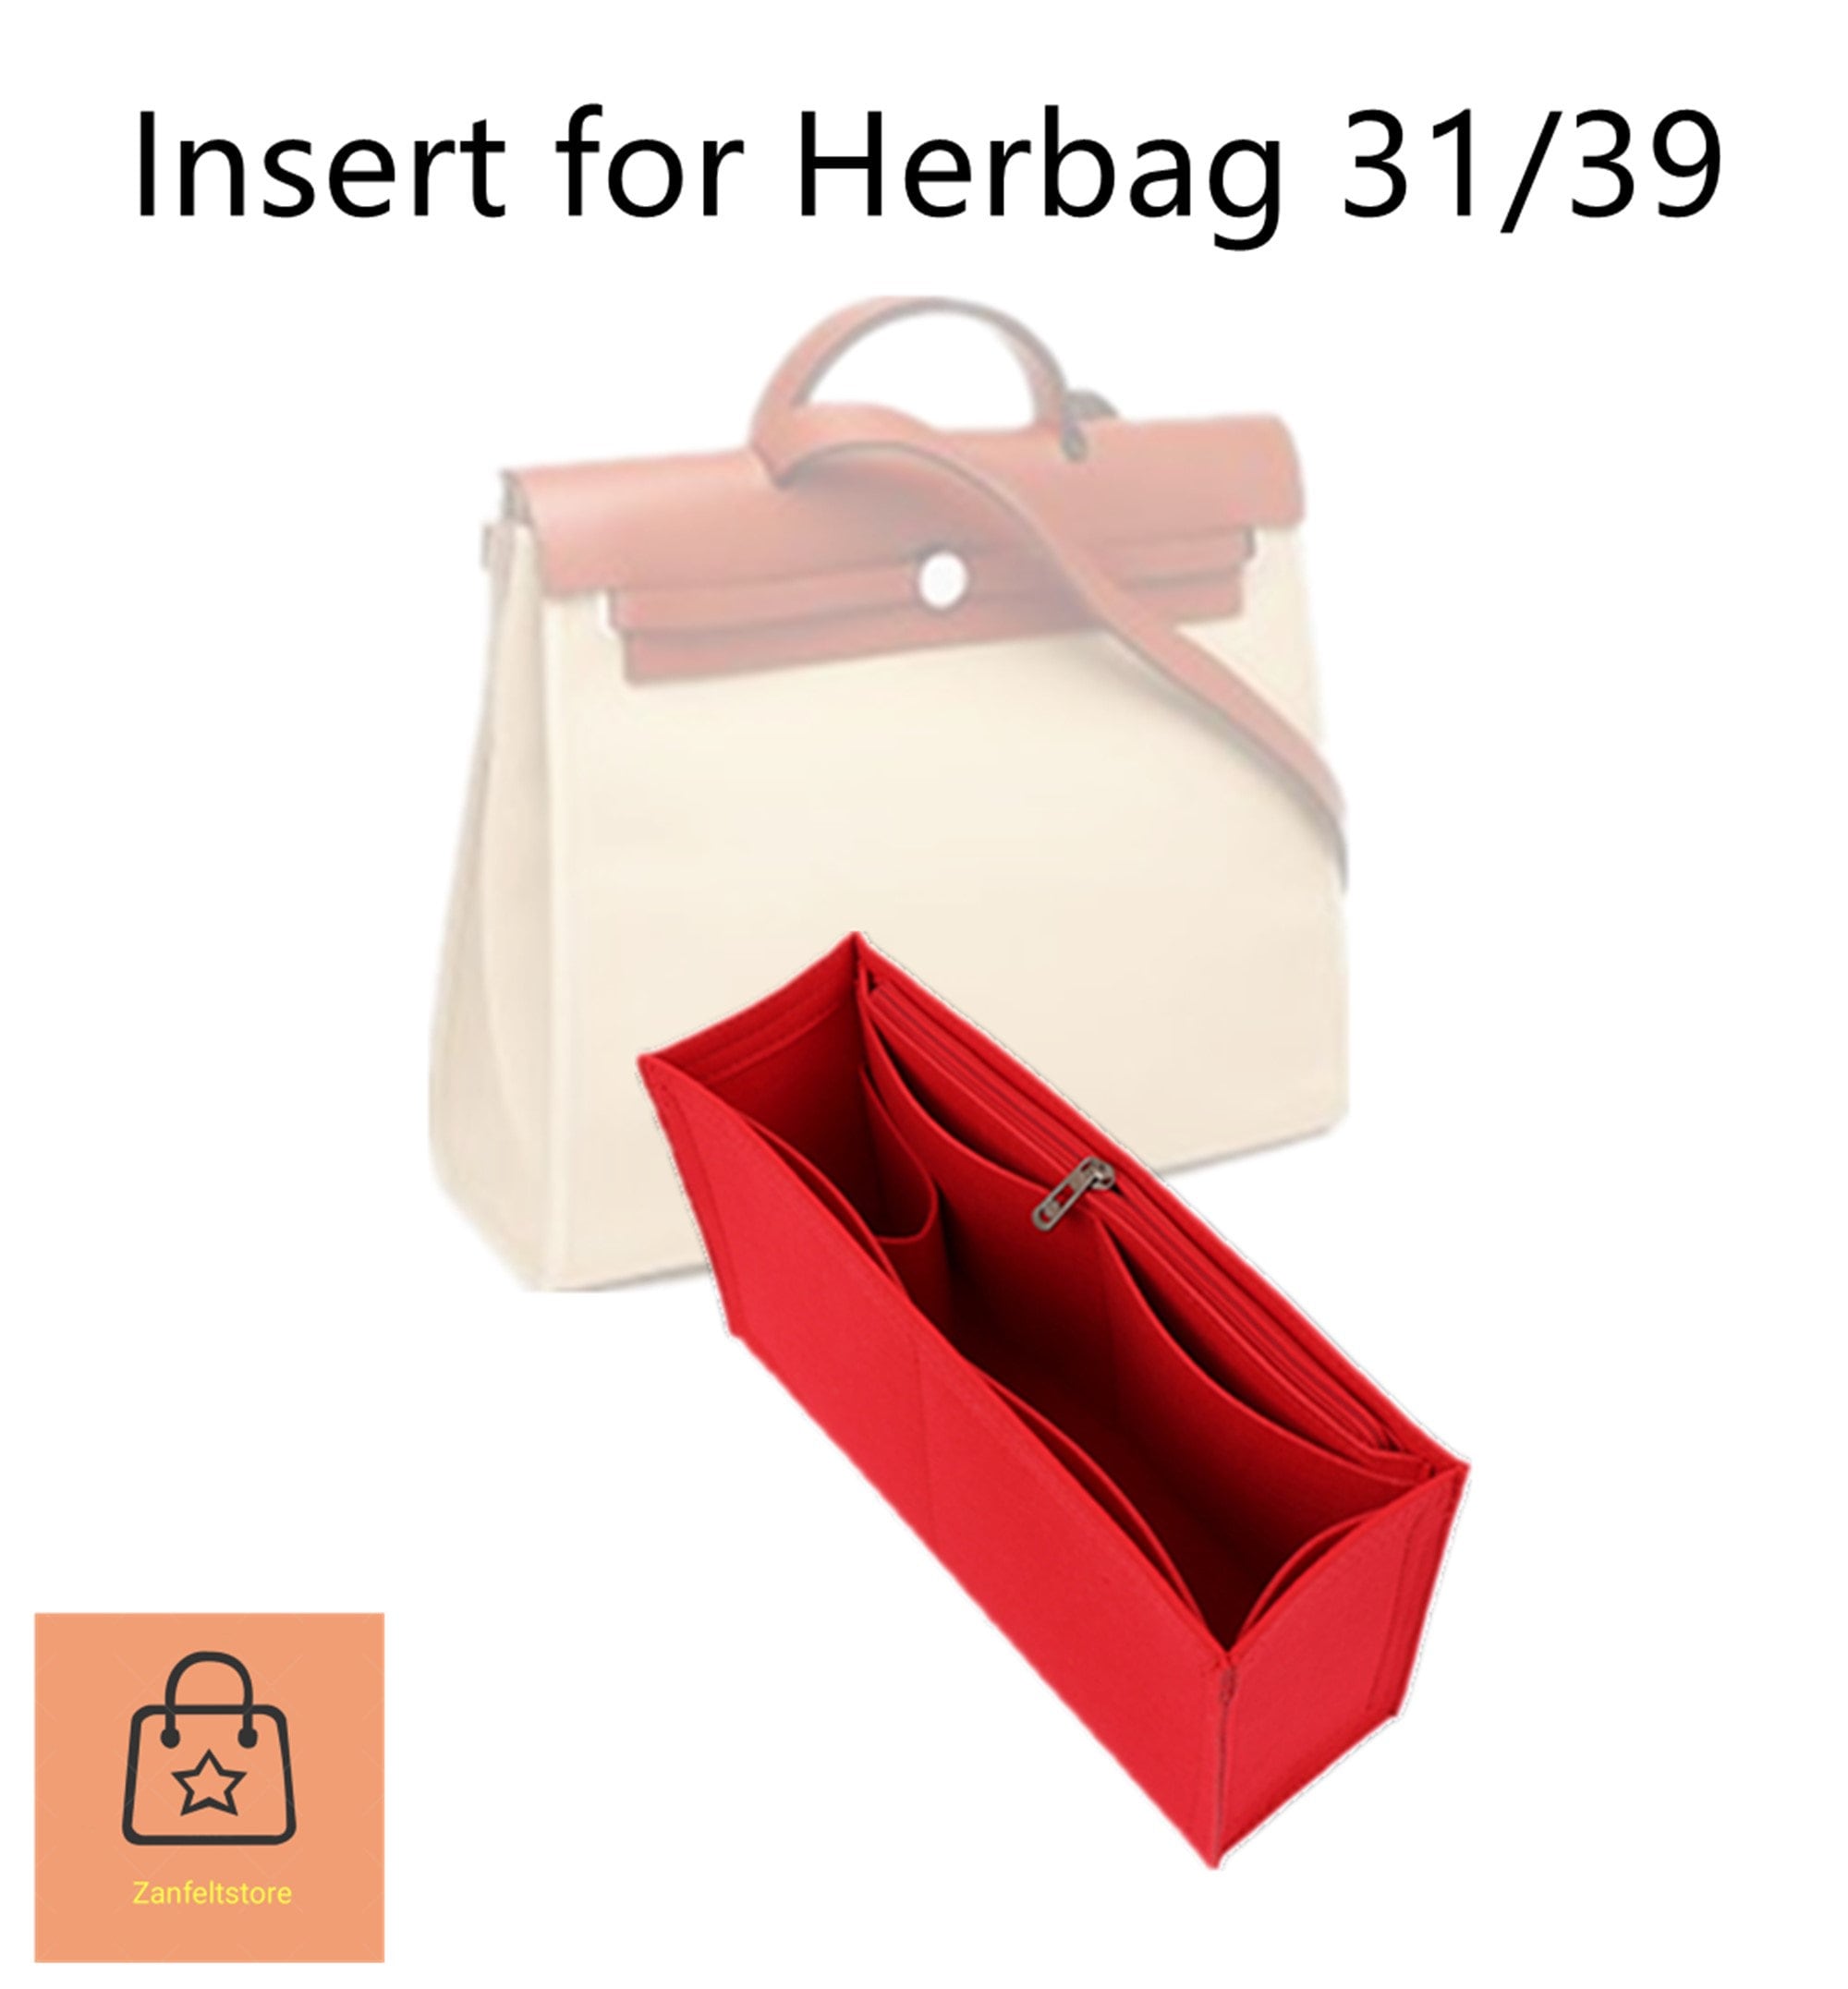 62 Hermes Herbag ideas  hermes, hermes bags, herbag hermes